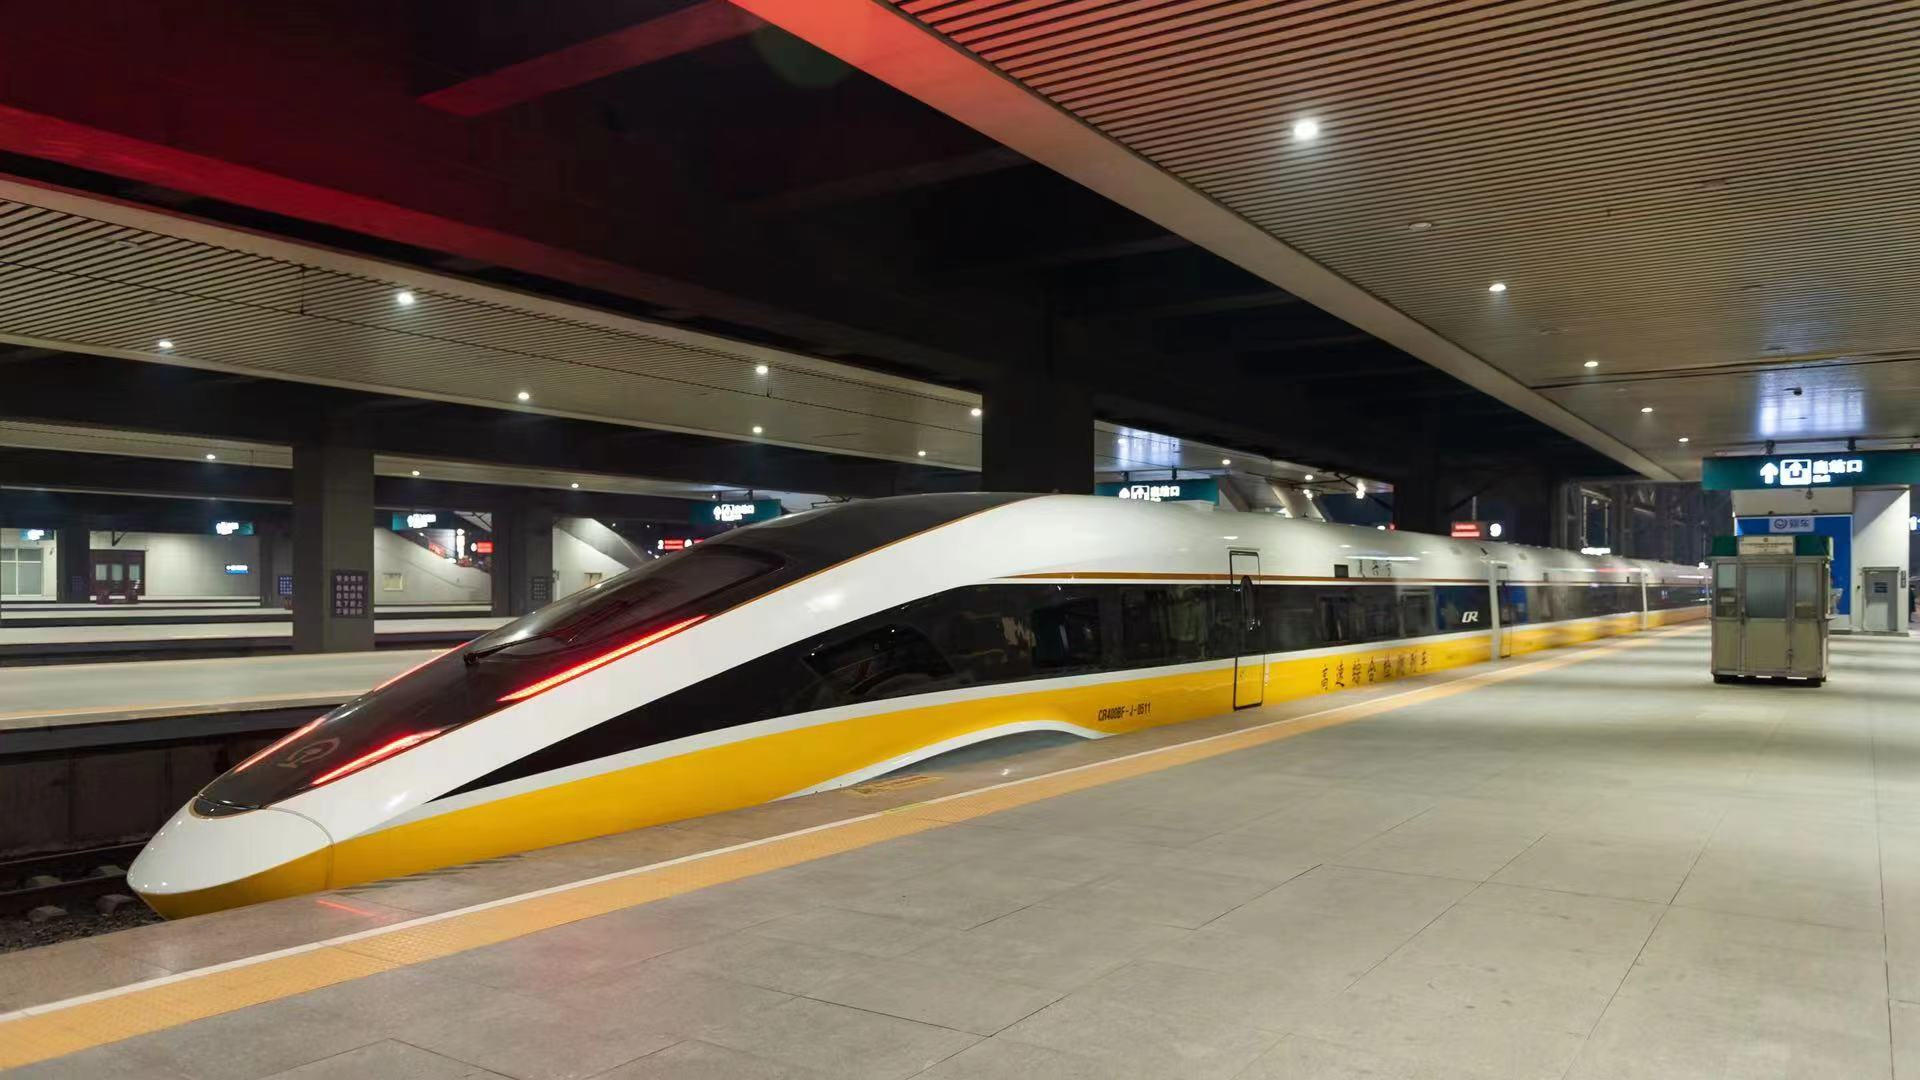 China's New High-speed Train To Run At 400 km/h